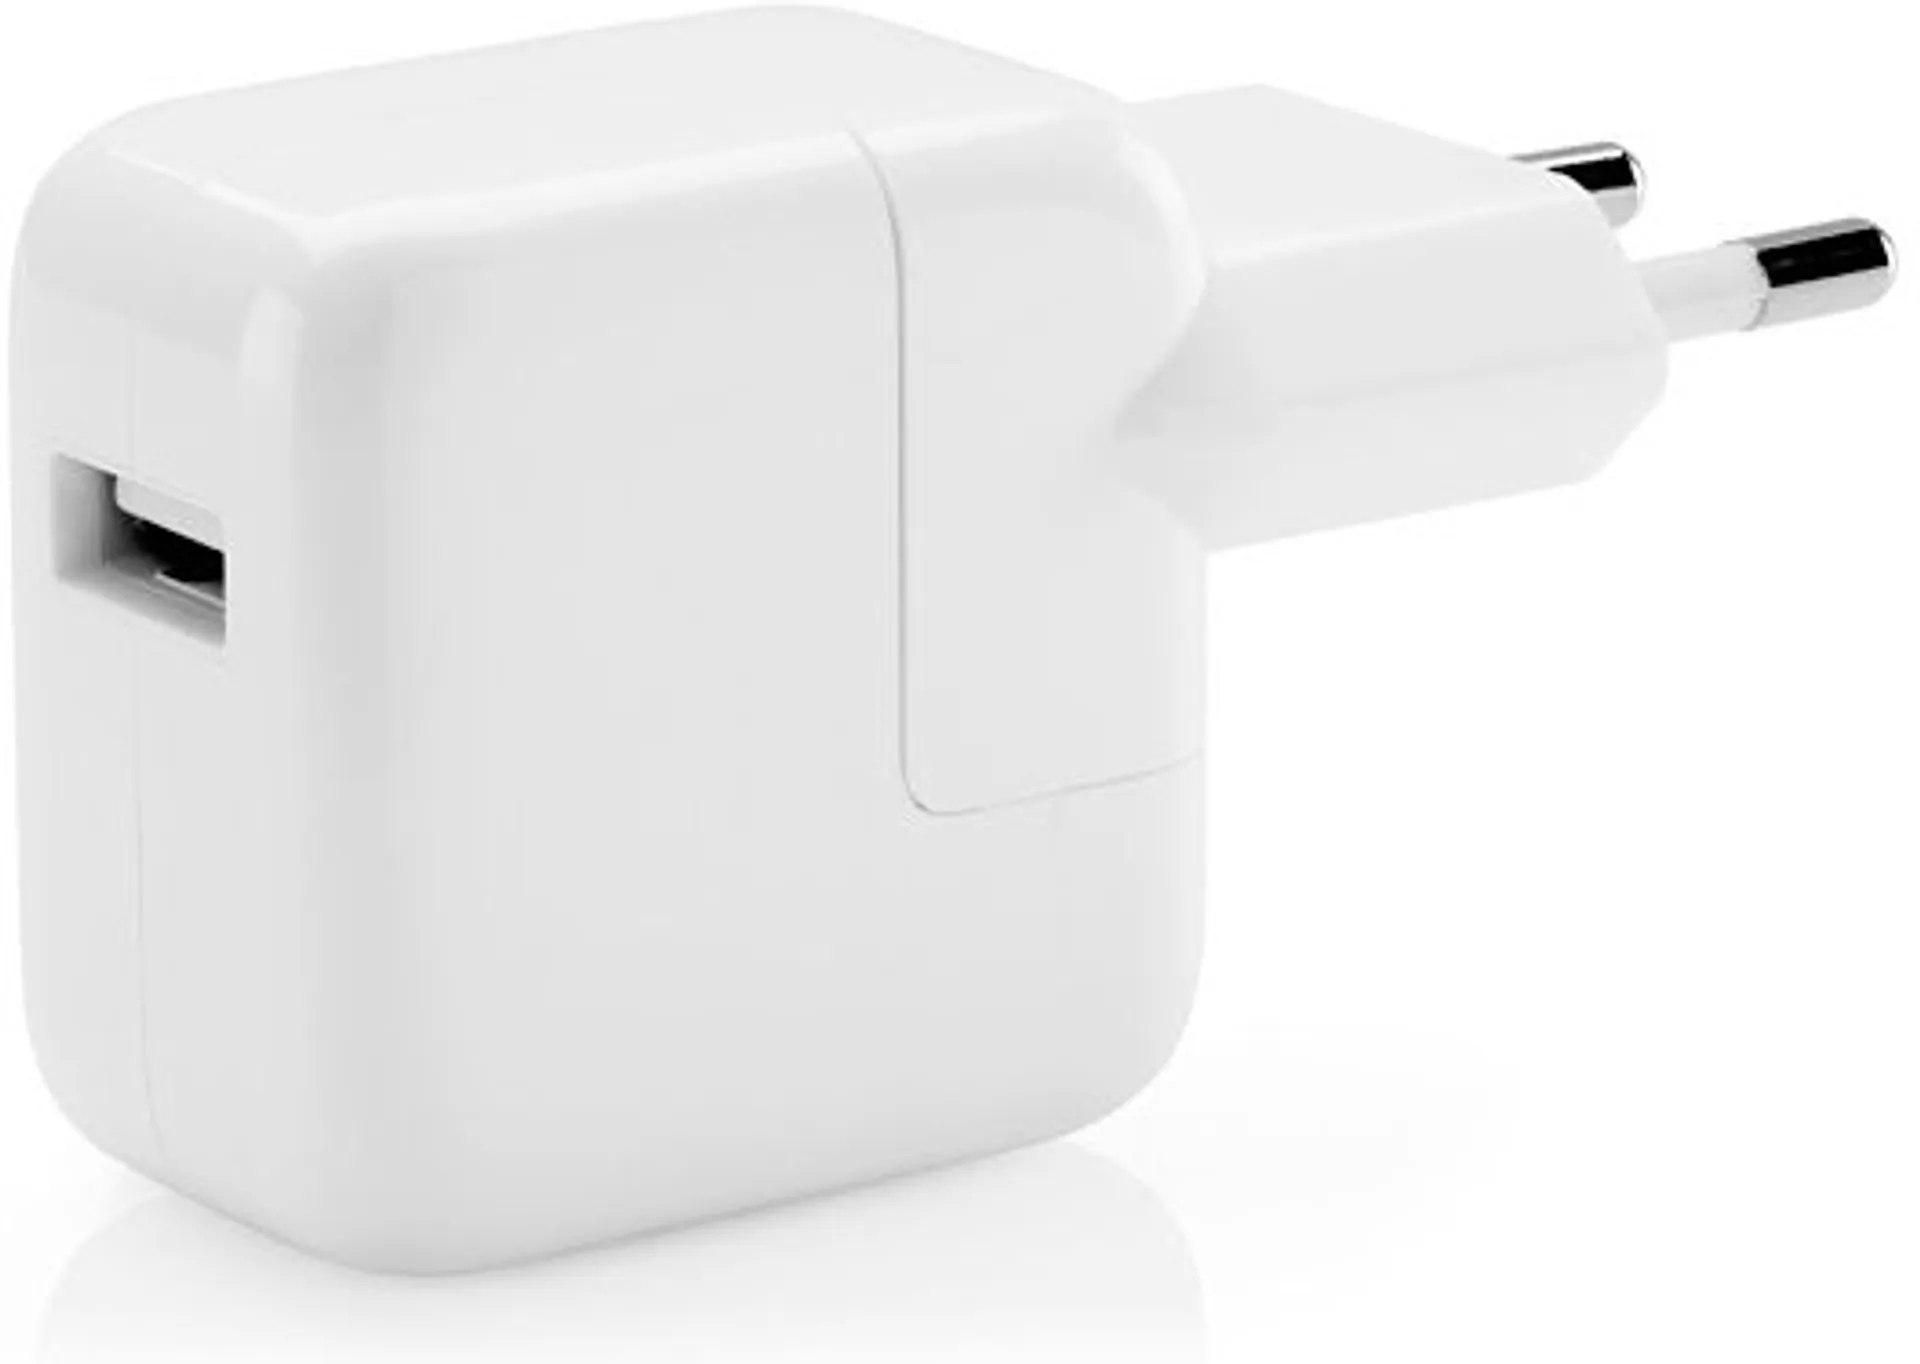 Apple USB Power Adapter 12W valkoinen